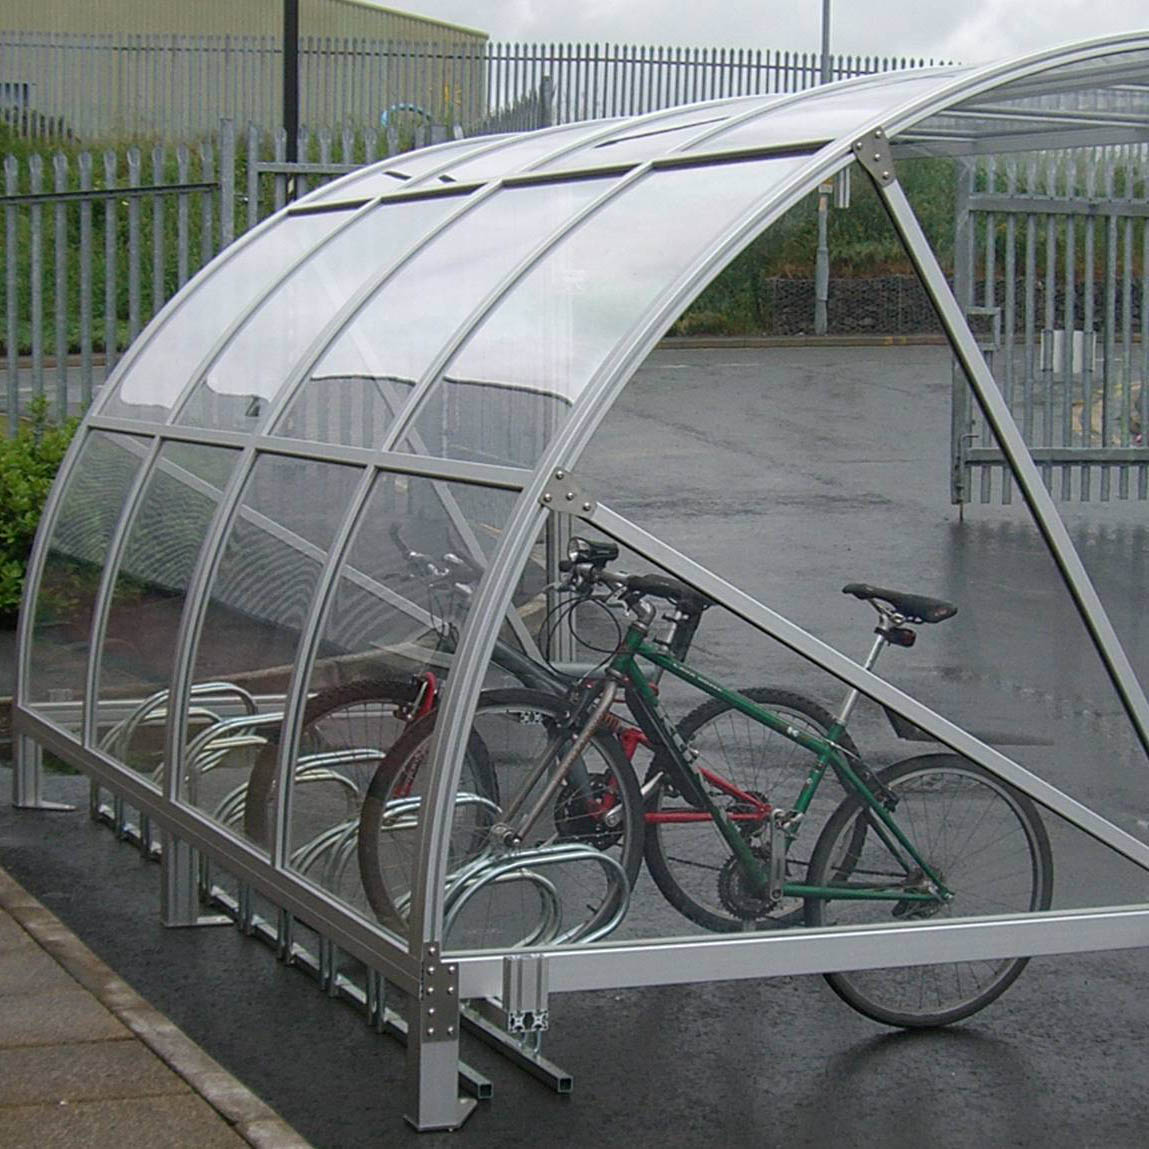 Refugios de metal para jardín al aire libre Soportes de almacenamiento de bicicletas Cobertizo para urbano